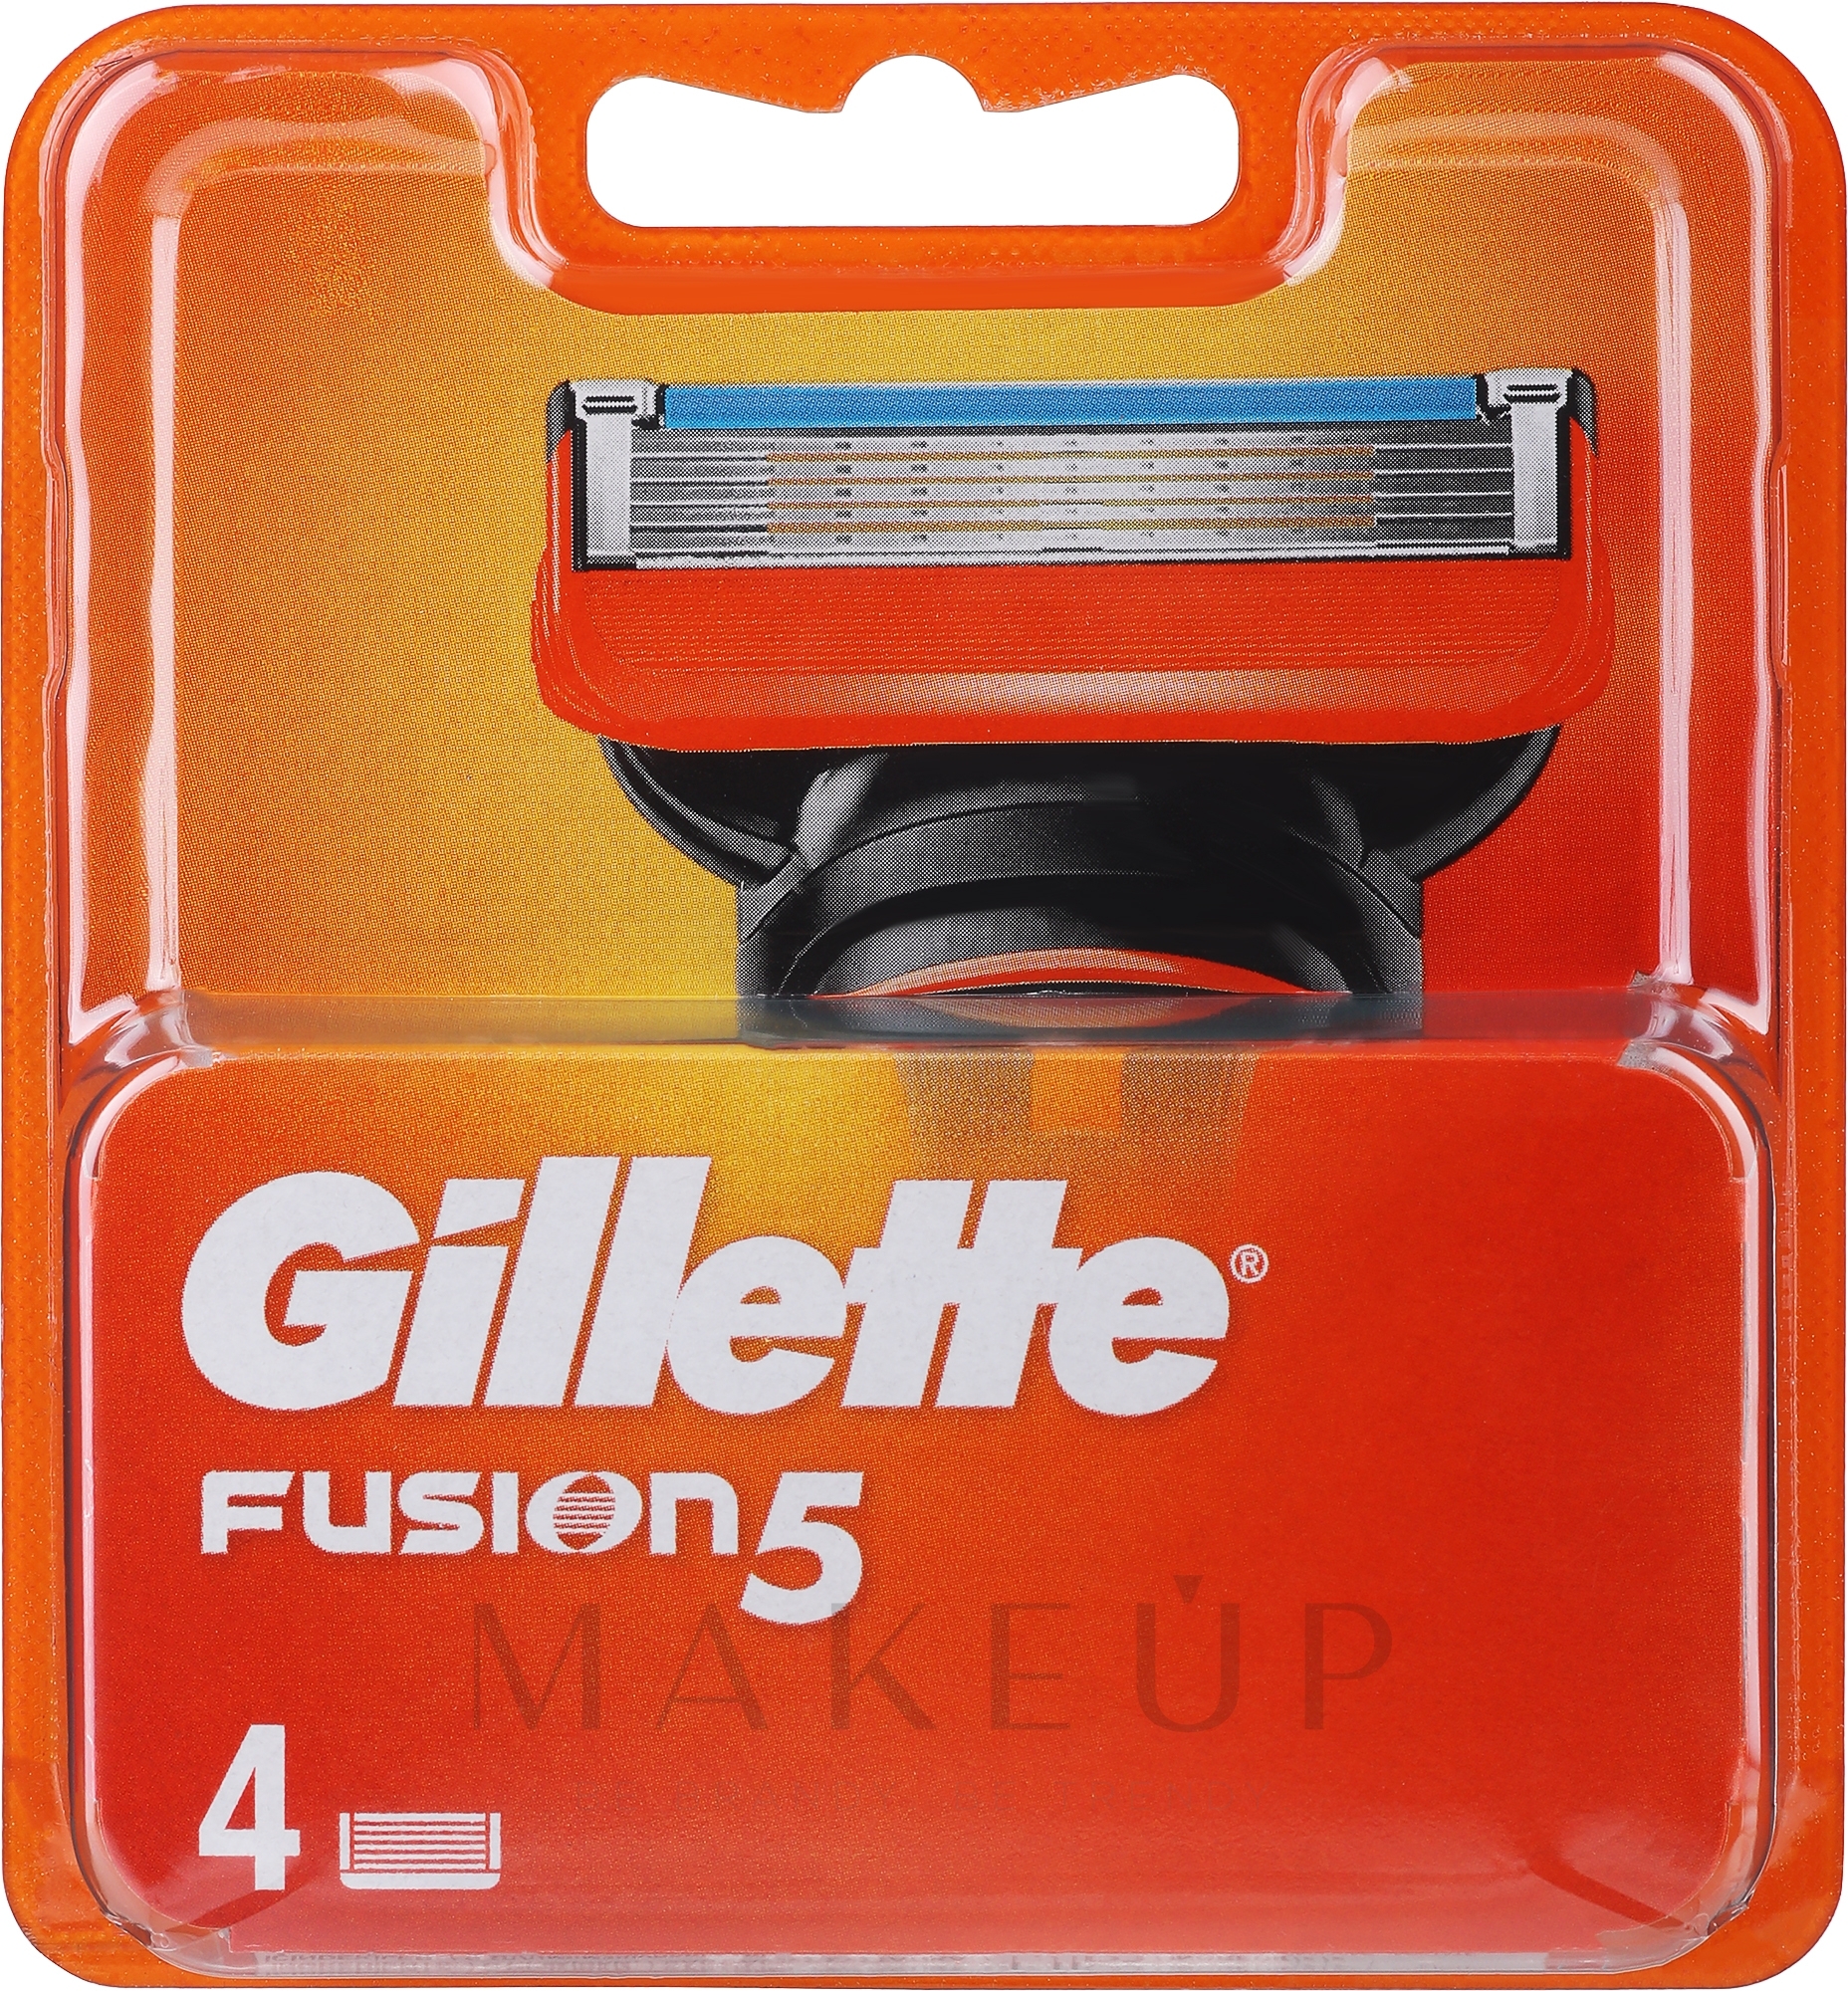 Ersatzklingen 4 St. - Gillette Fusion 5 — Foto 4 St.